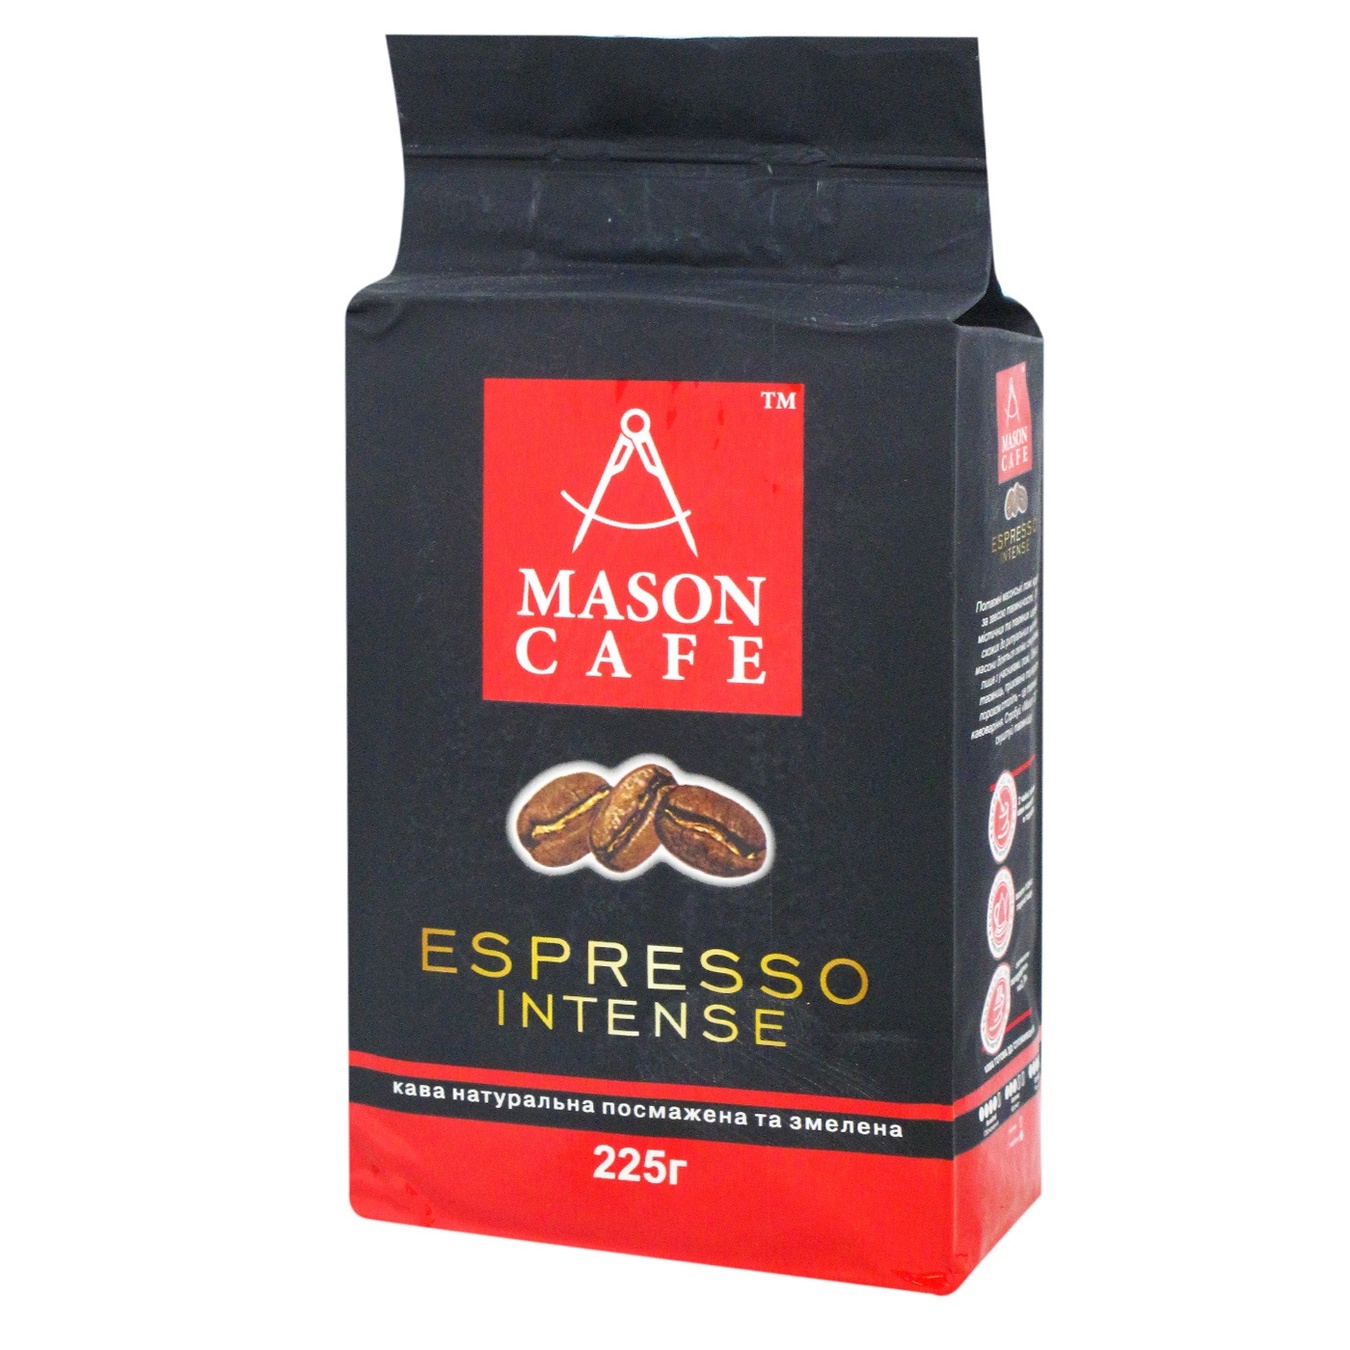 Кава мелена Espresso Intense Mason cafe пакет 225г